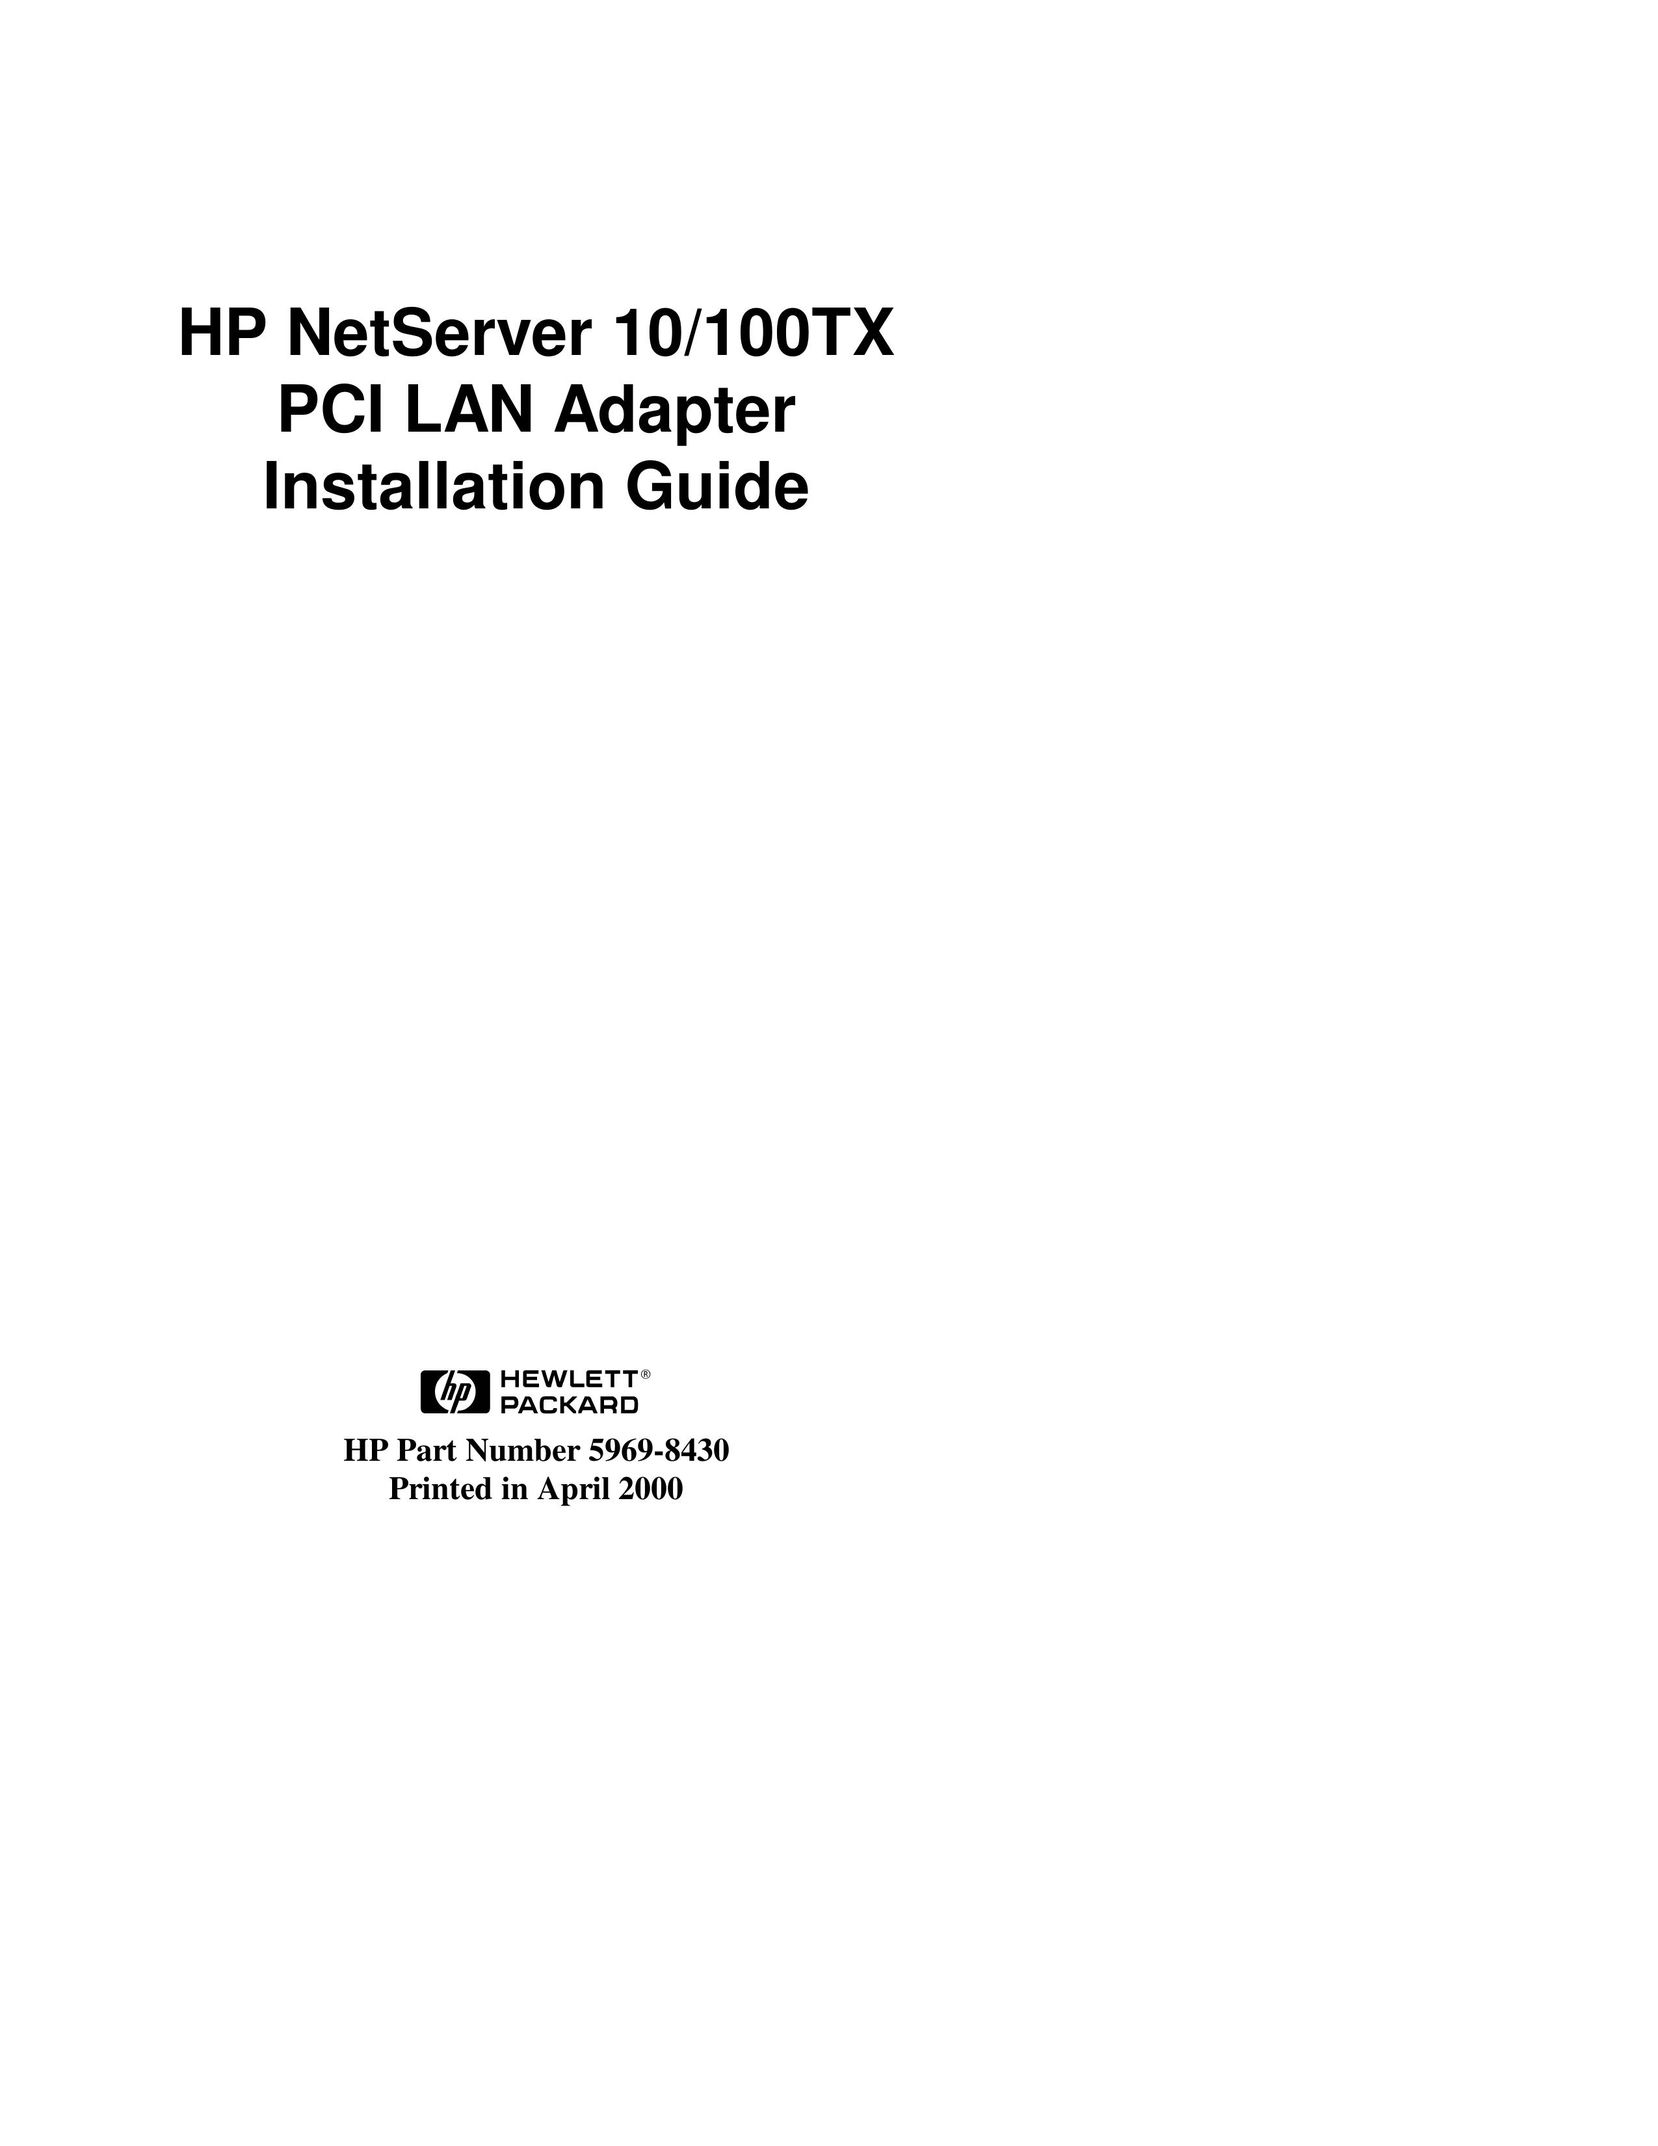 HP (Hewlett-Packard) 5969-8430 Network Card User Manual